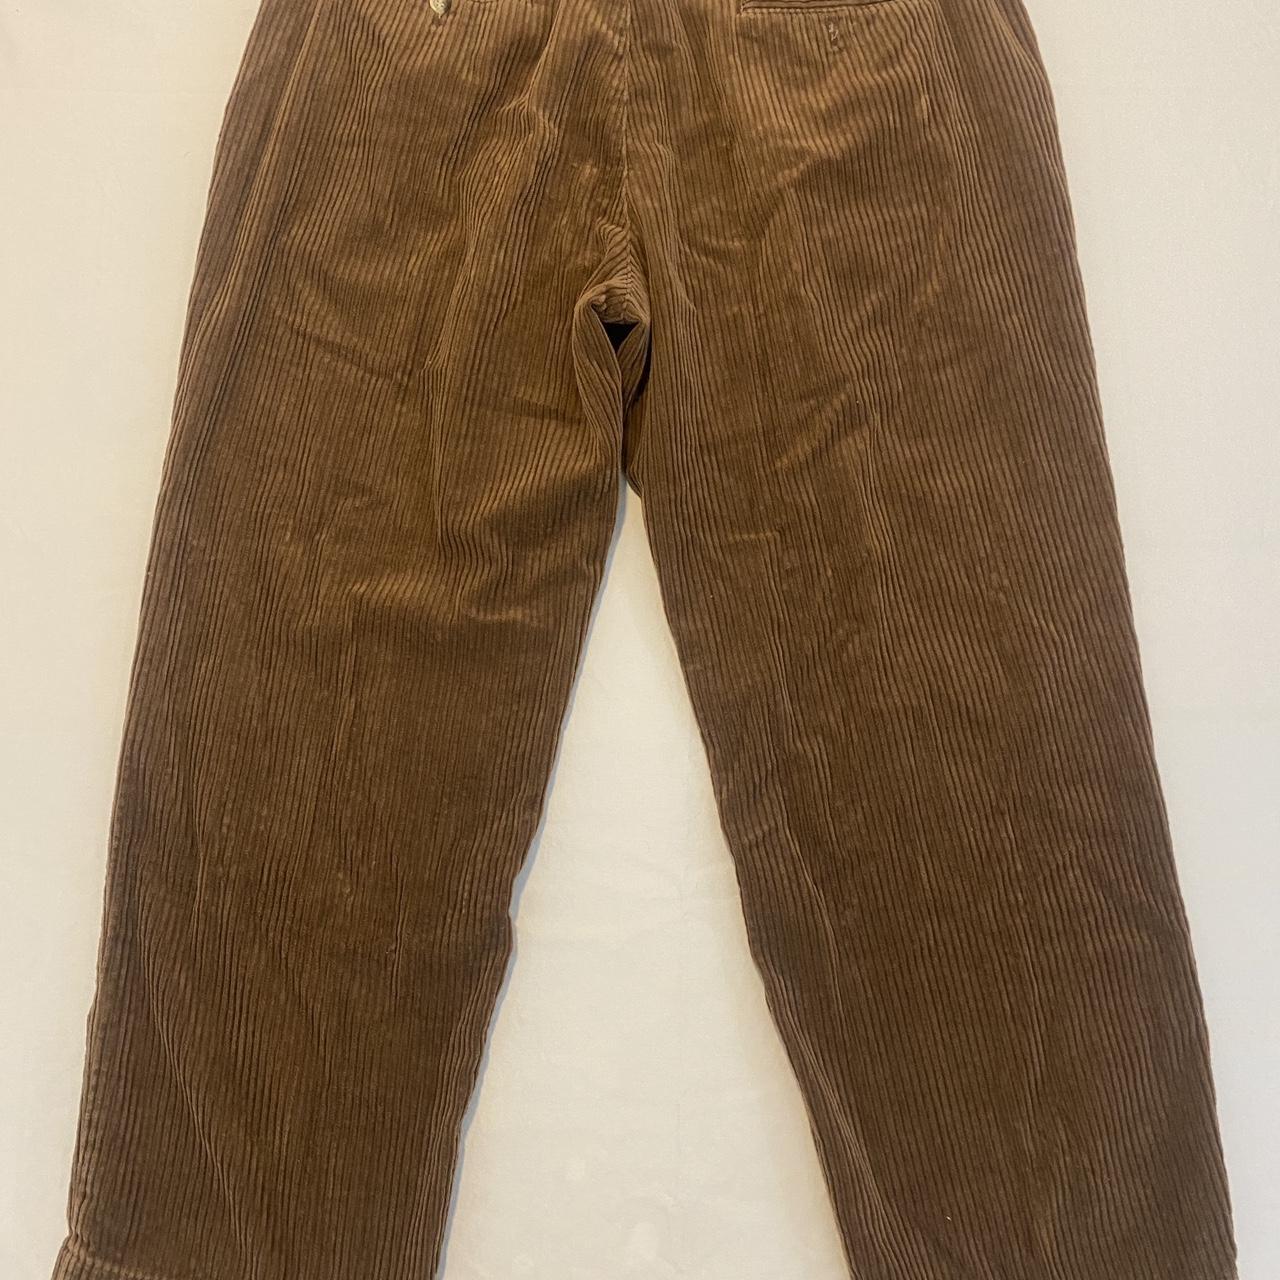 PJ Harlow Men's Brown Trousers (2)